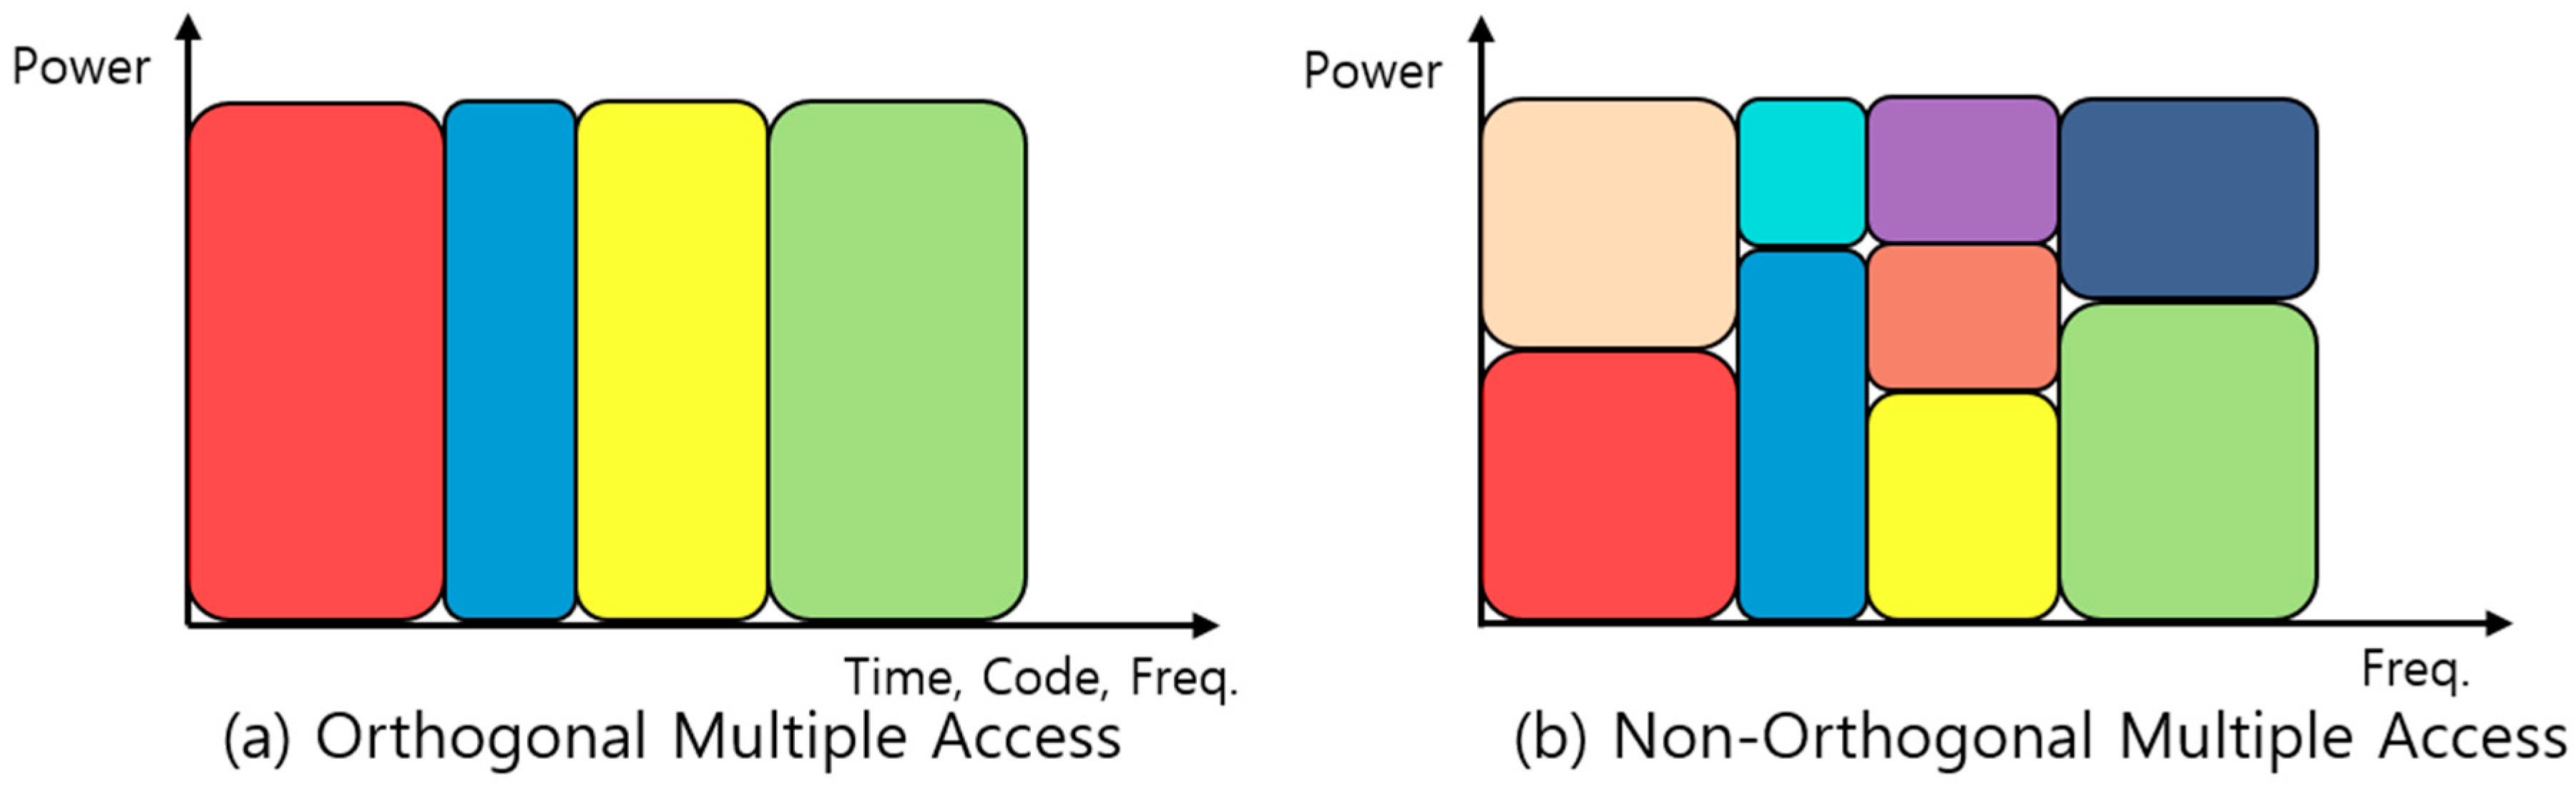 Multiple access. Noma non-orthogonal. Noma 5g. OFDM И OFDMA.